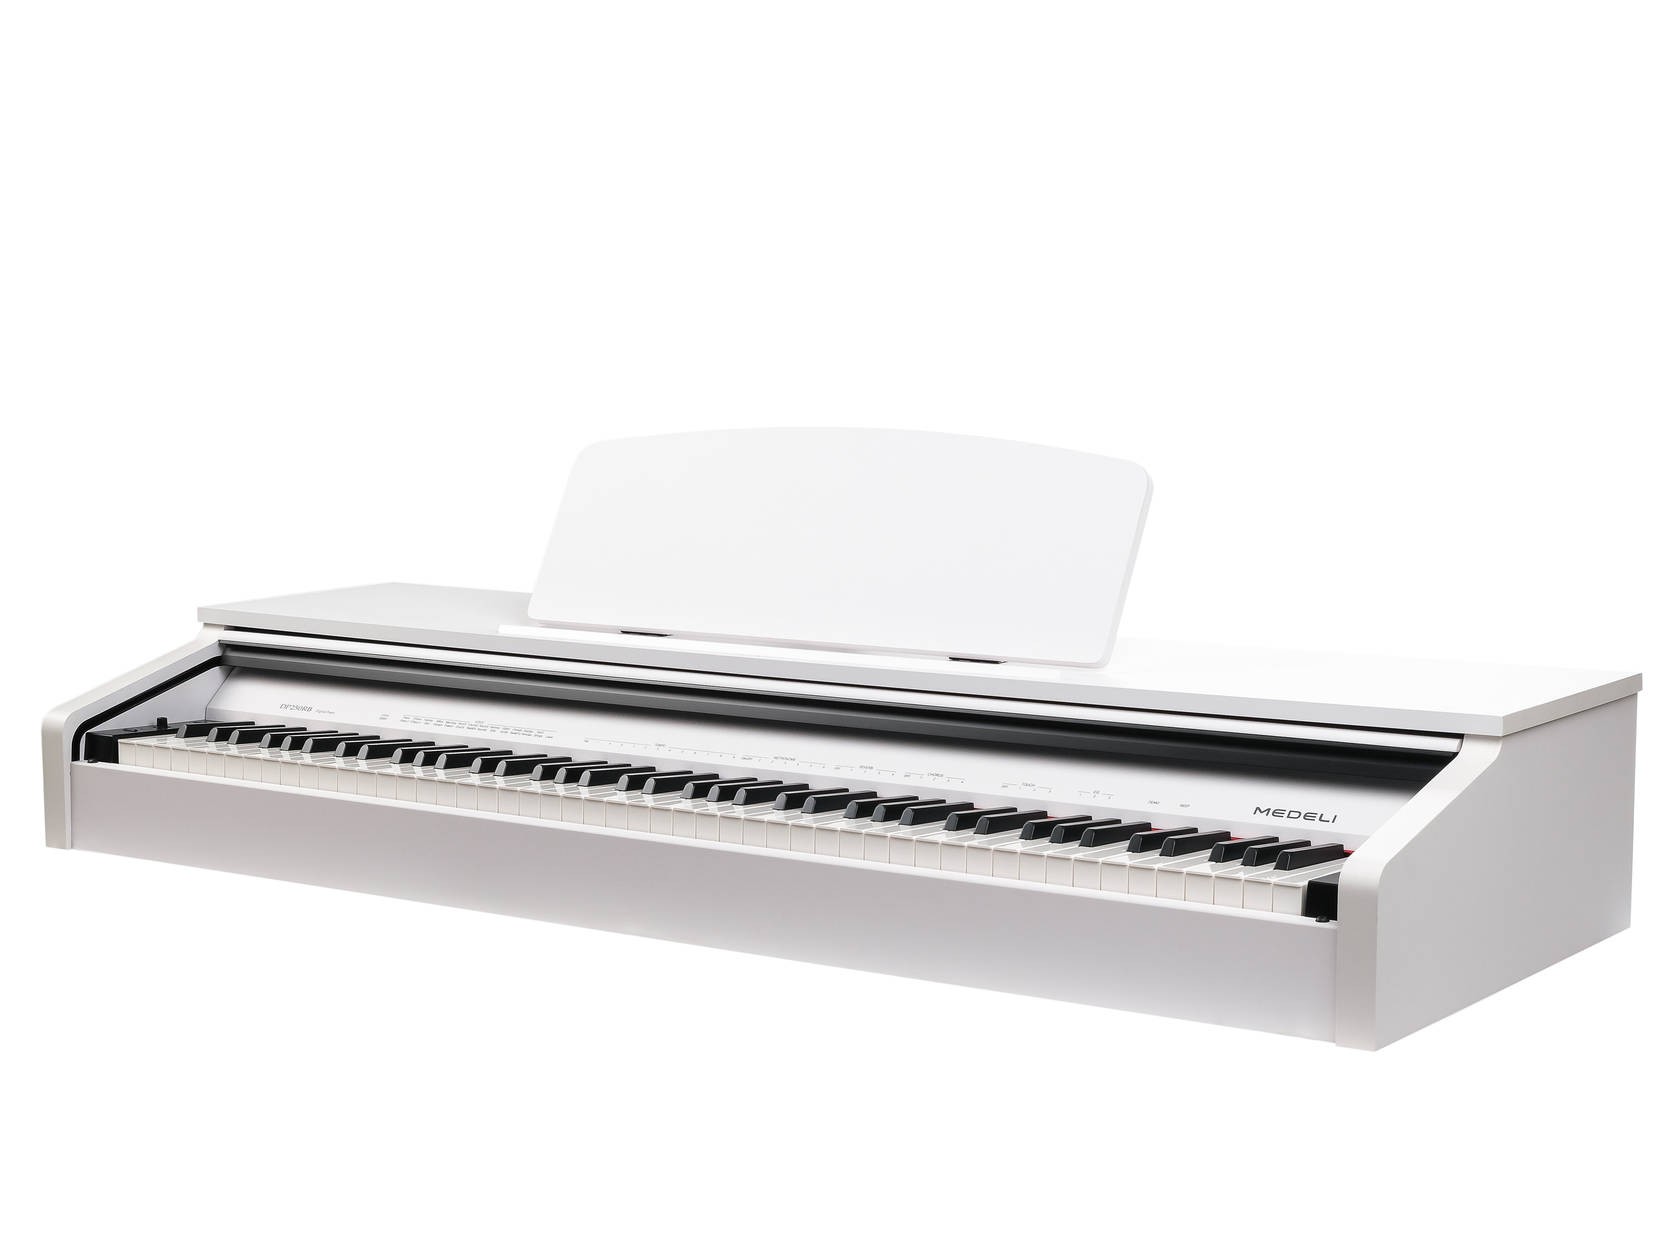 Цифровое пианино Medeli DP250RB-GW